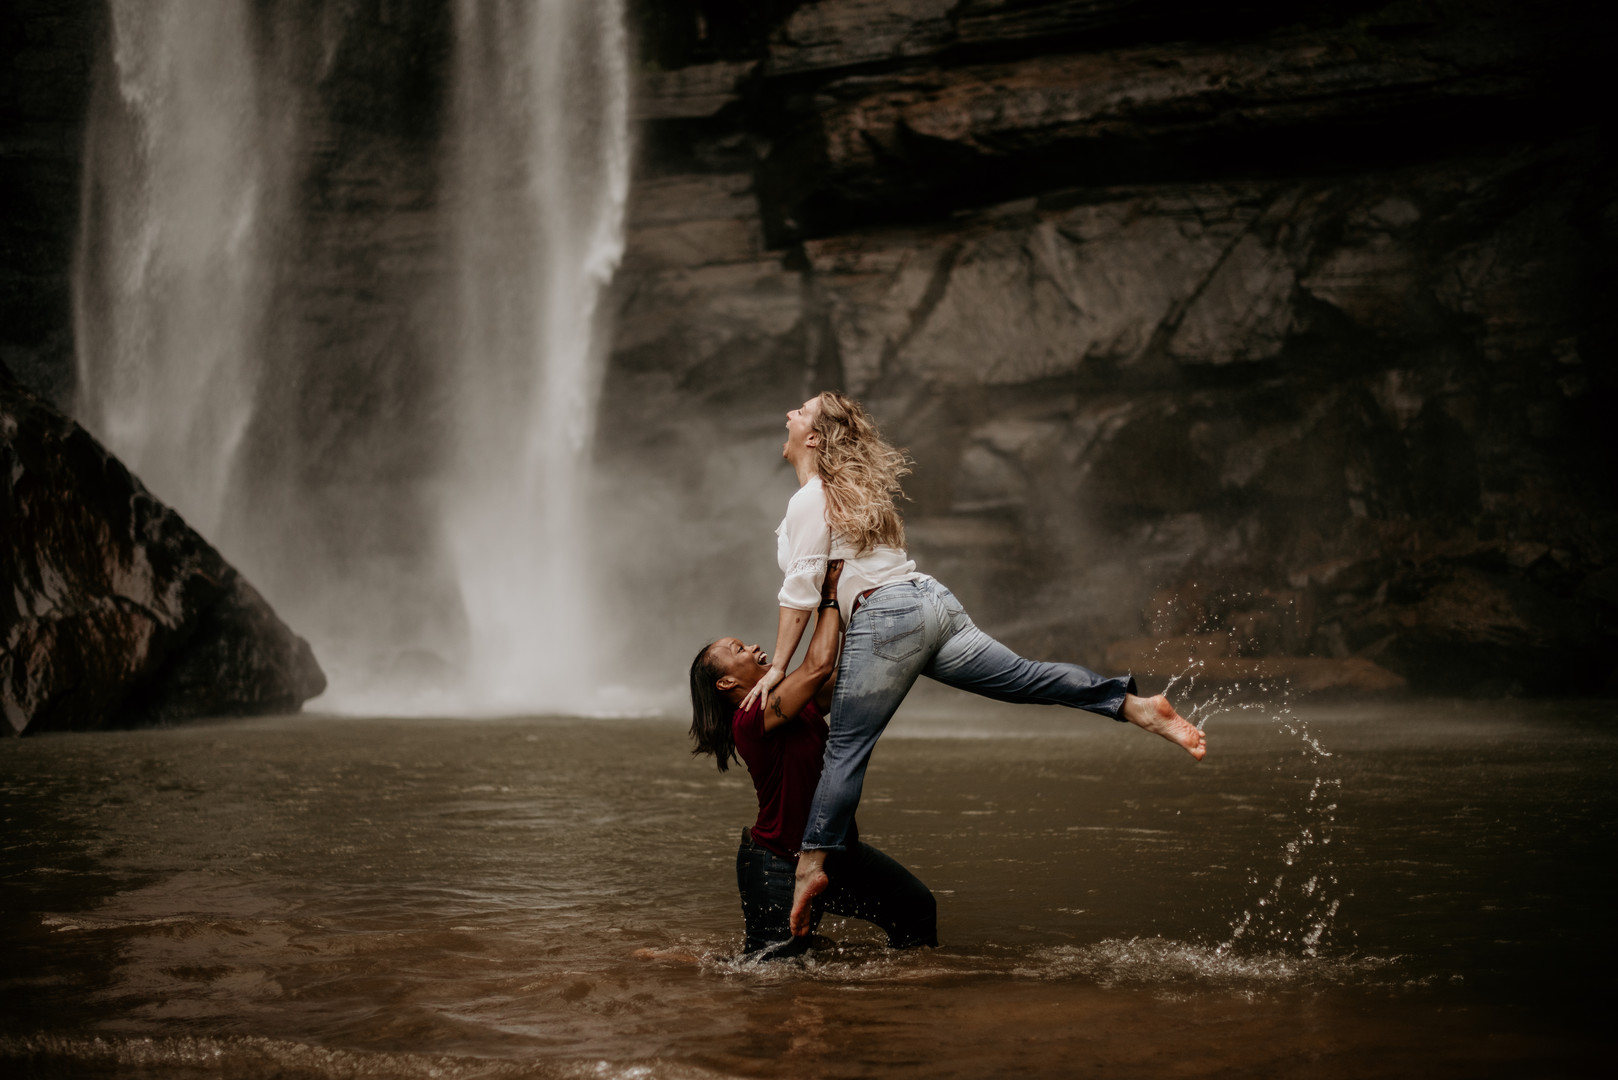 Waterfall adventure engagement photos at Toccoa Falls two brides fun lifting